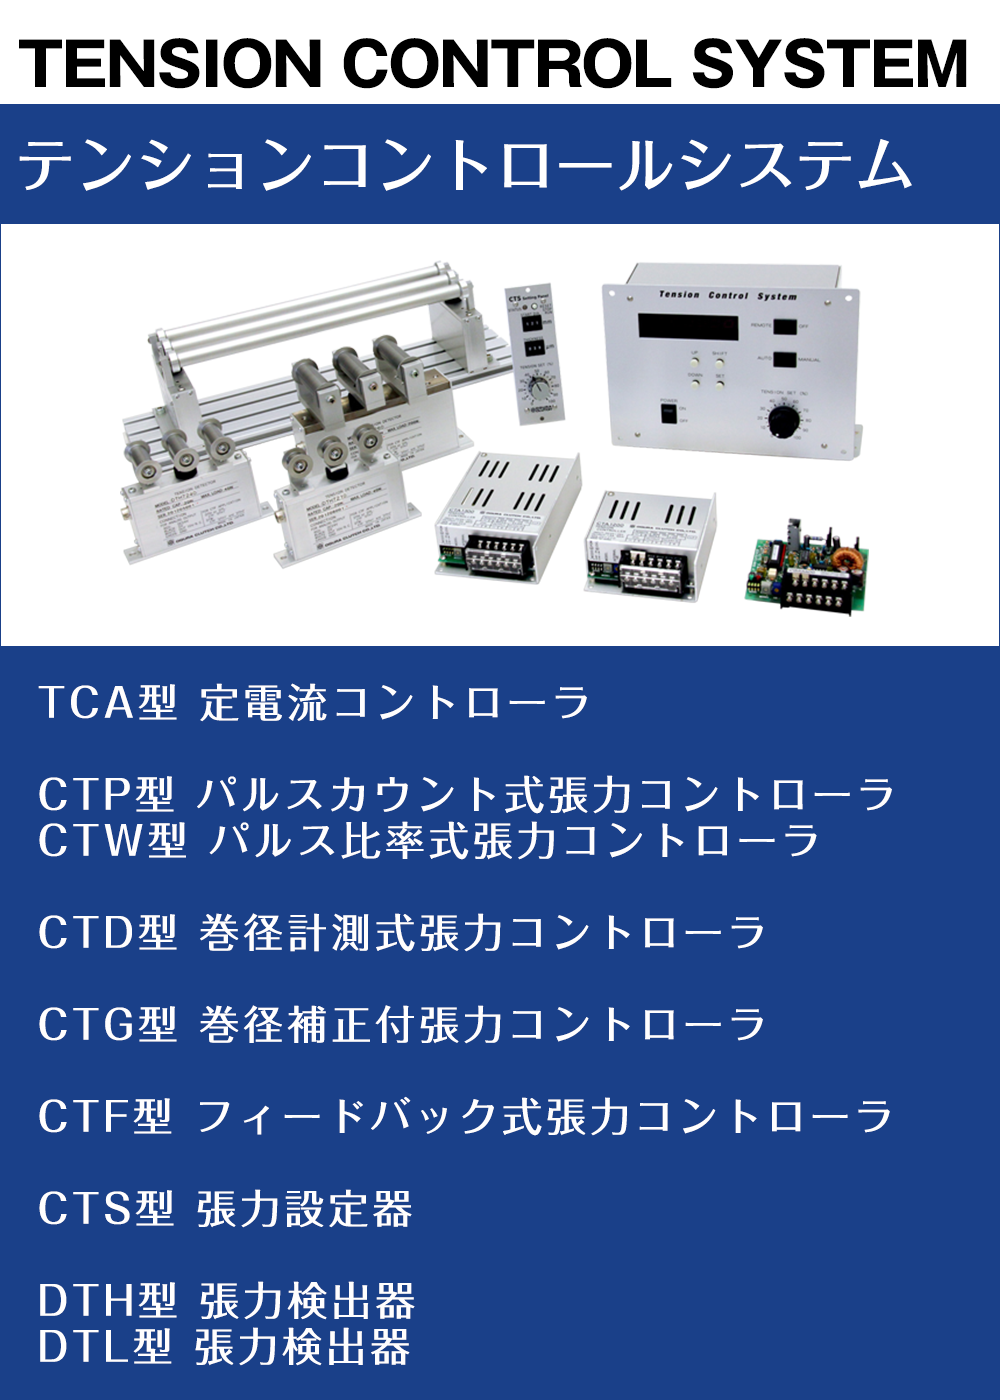 小倉クラッチ 張力設定器 CTS 1130